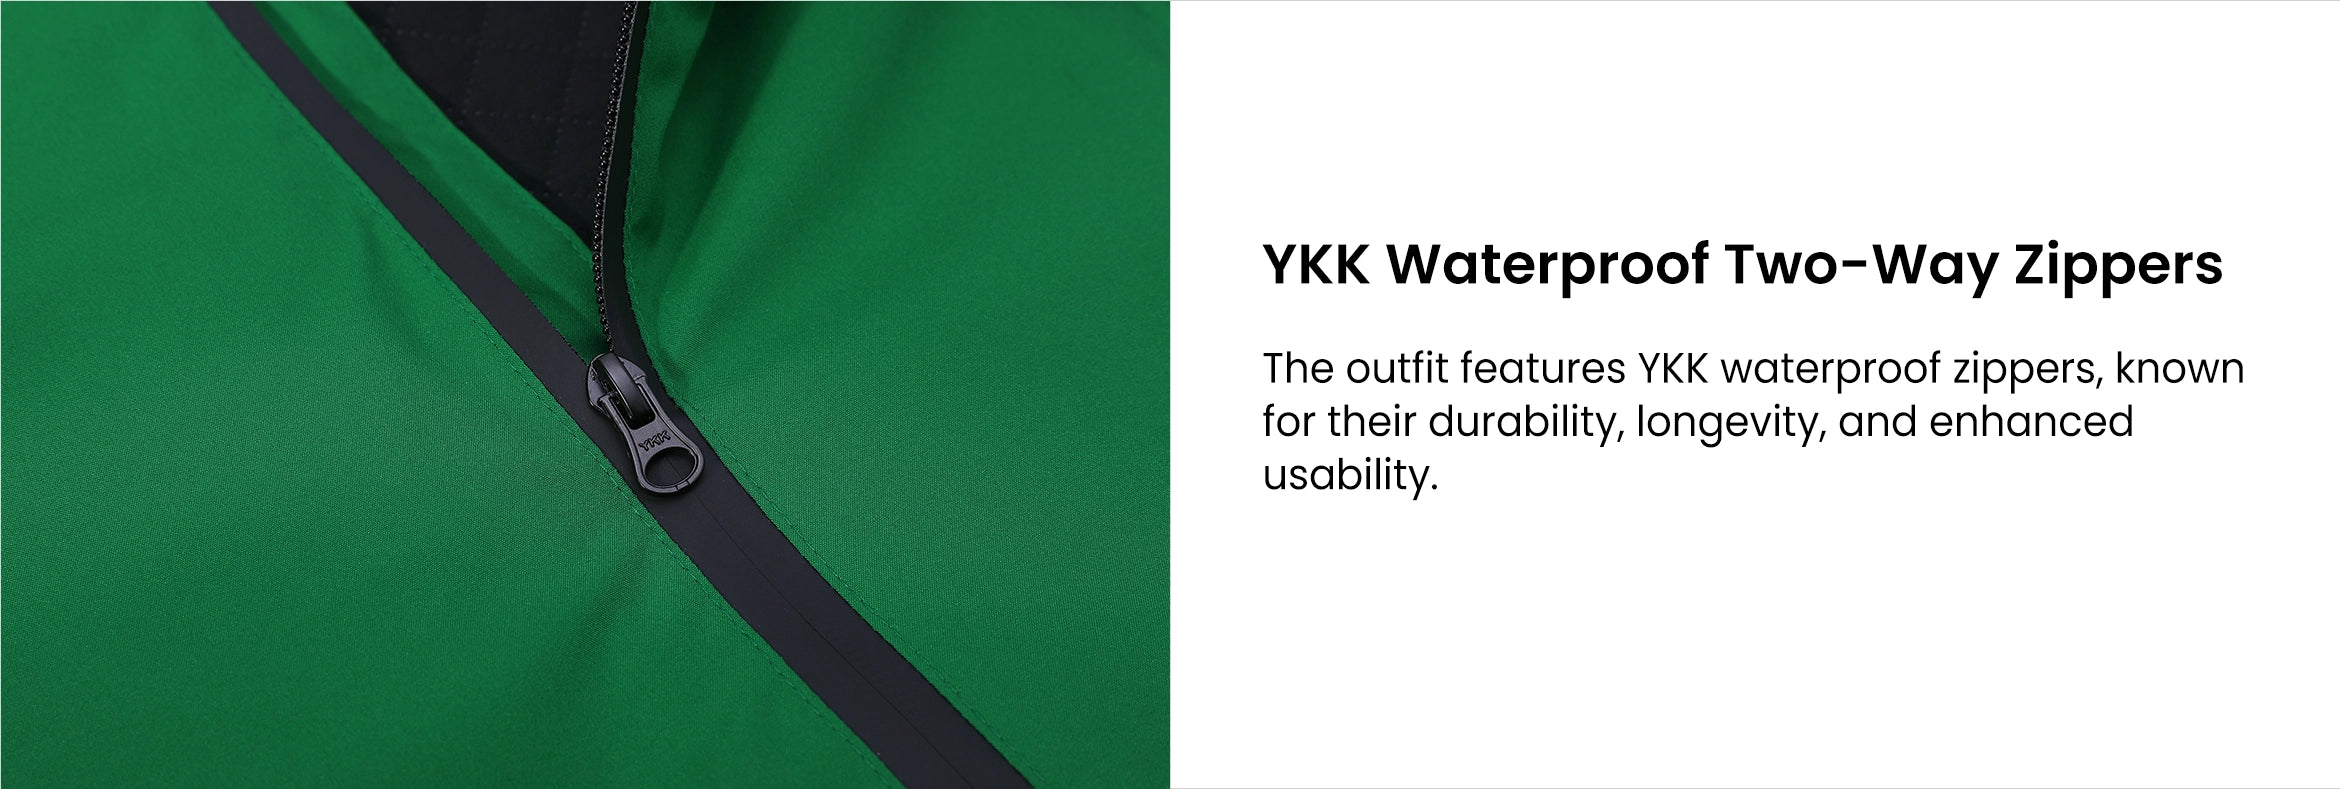 8. YKK Waterproof Two-Way Zippers